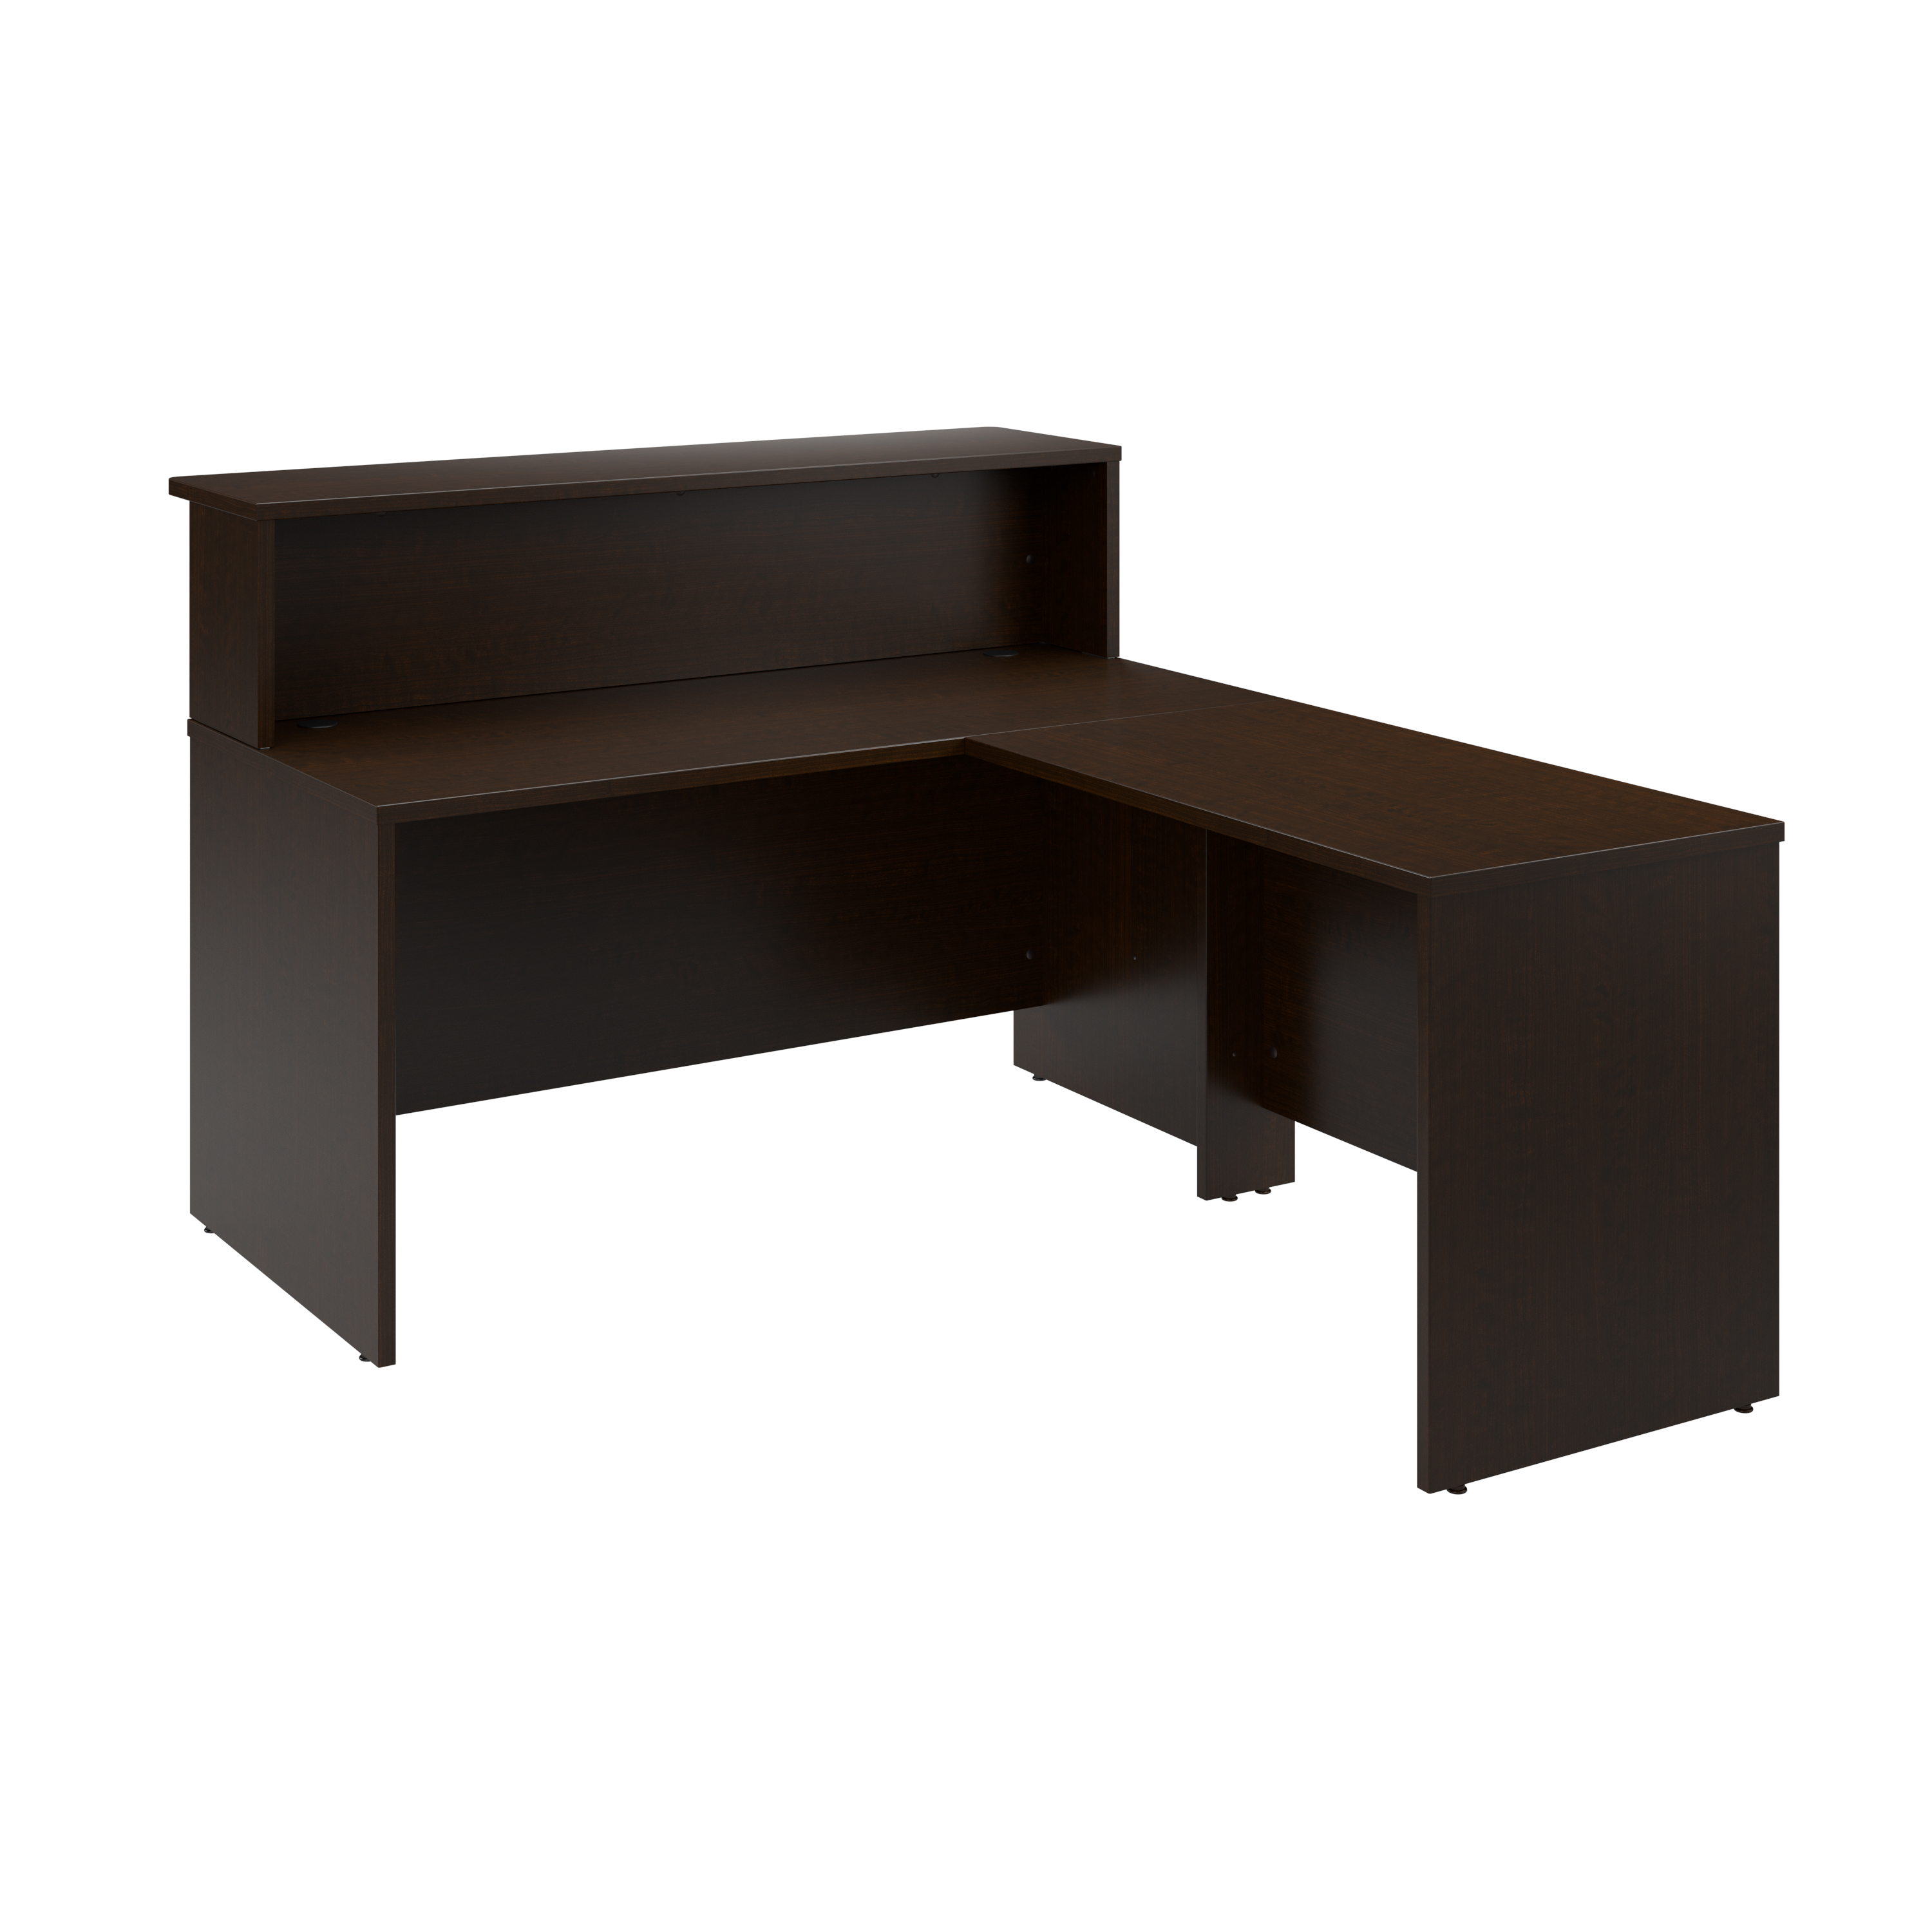 Shop Bush Business Furniture Arrive 60W x 72D L Shaped Reception Desk with Shelf 02 ARV003MR #color_mocha cherry